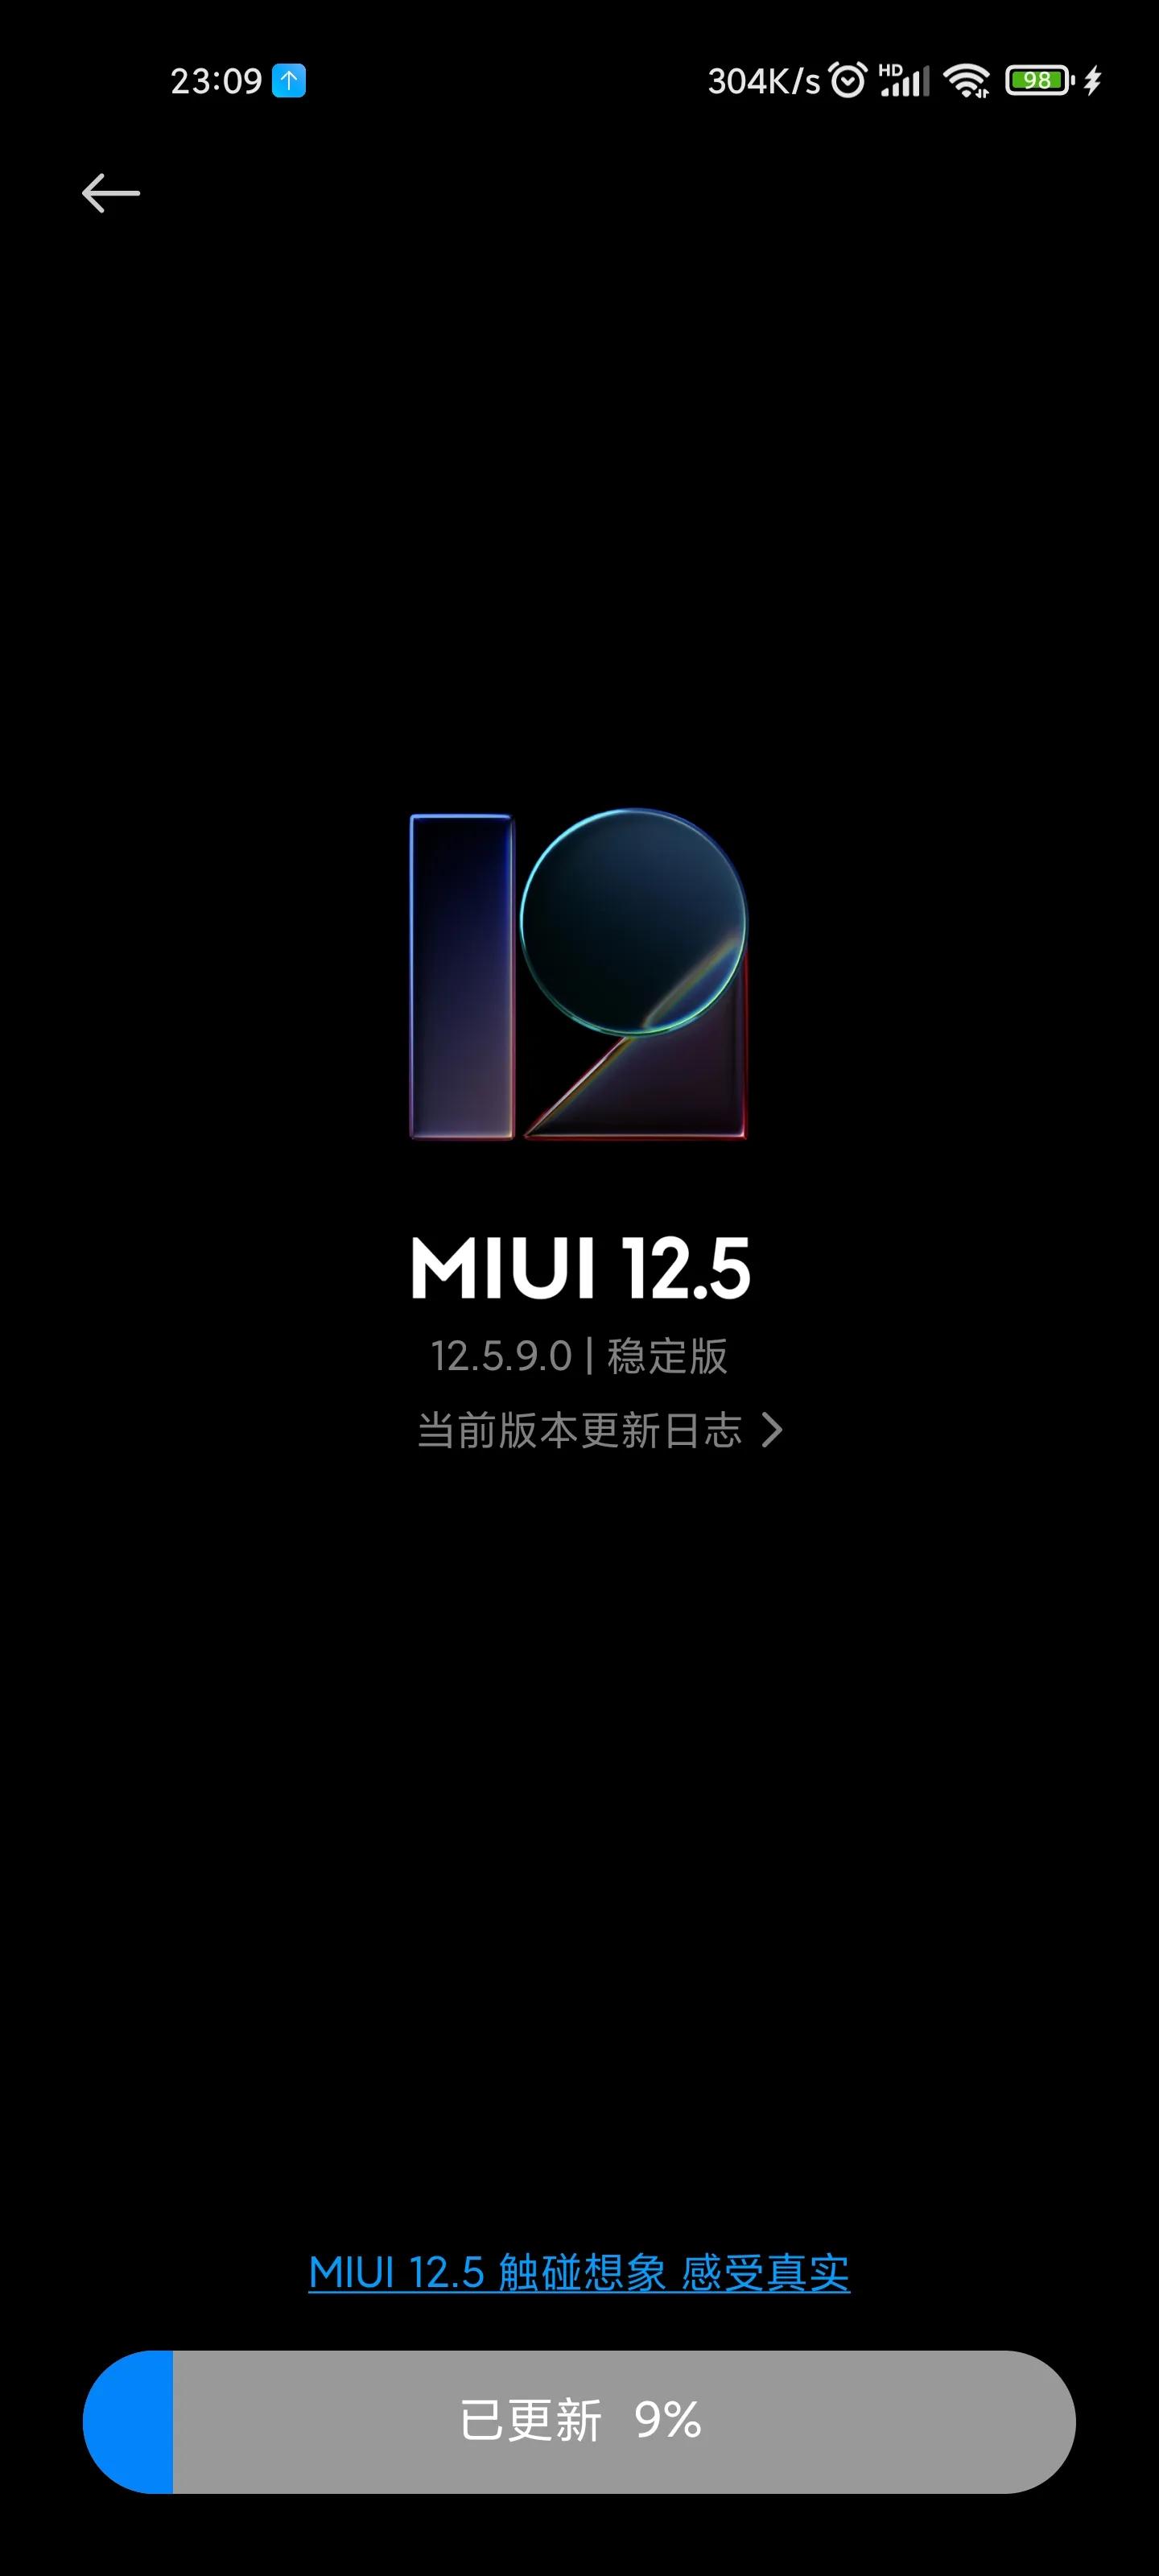 MIUI12.5增强版手动更新教程